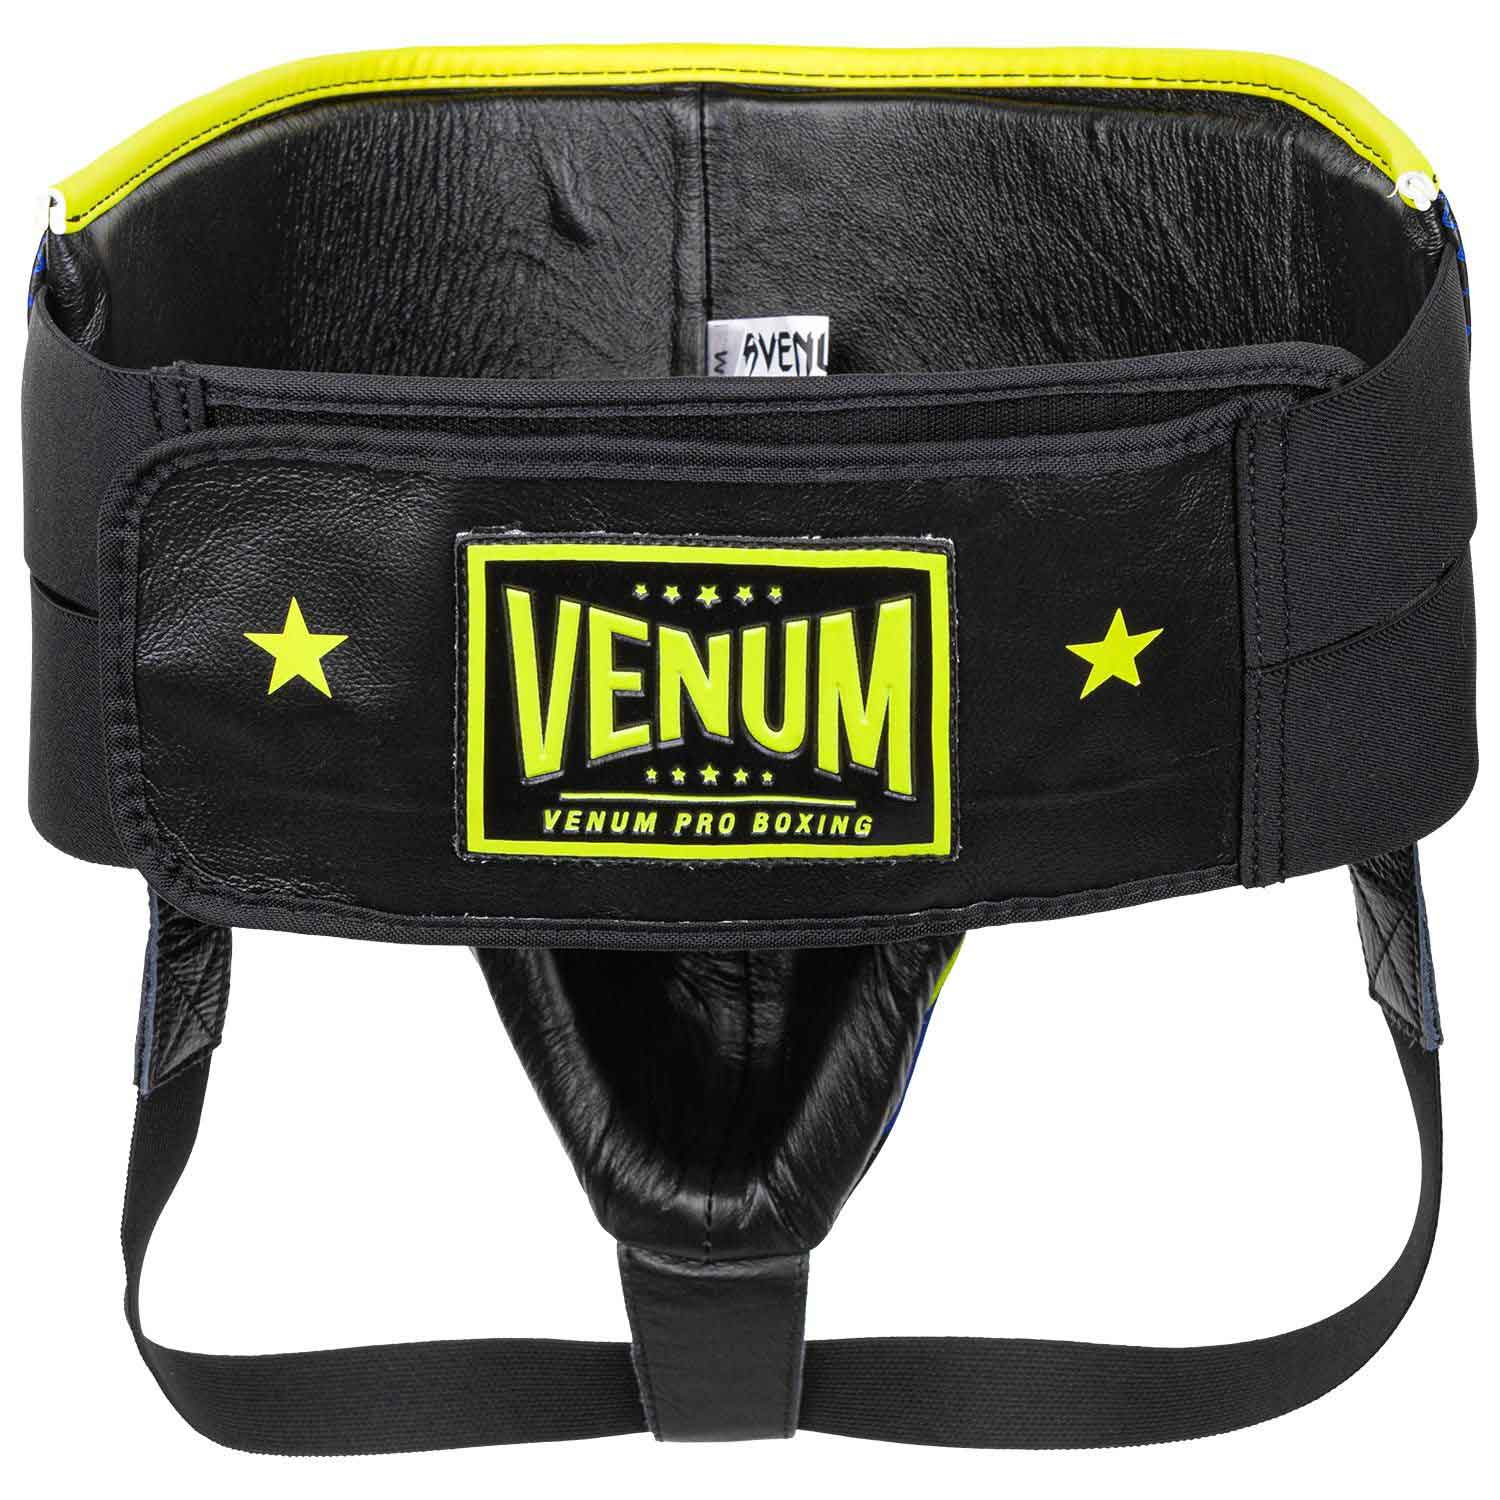 VENUM／ヴェナム　ファイトギア　　PRO BOXING PROTECTIVE CUP LOMA EDITION／プロ ボクシング プロテクティブカップ ロマ（ワシル・ロマチェンコ）エディション